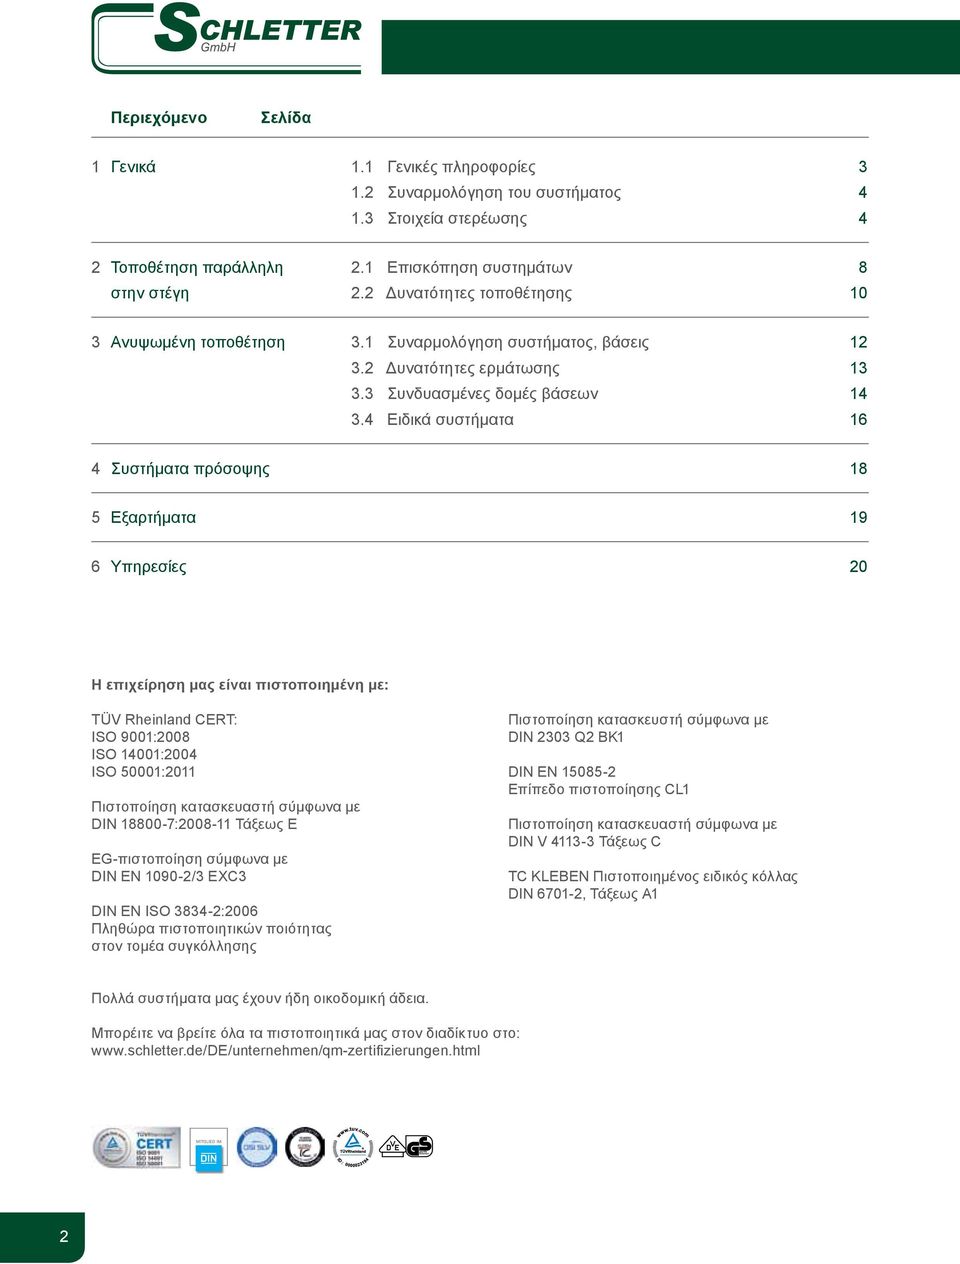 4 Ειδικά συστήματα 16 4 Συστήματα πρόσοψης 18 5 Εξαρτήματα 19 6 Υπηρεσίες 20 Η επιχείρηση μας είναι πιστοποιημένη με: TÜV Rheinland CERT: ISO 9001:2008 ISO 14001:2004 ISO 50001:2011 Πιστοποίηση